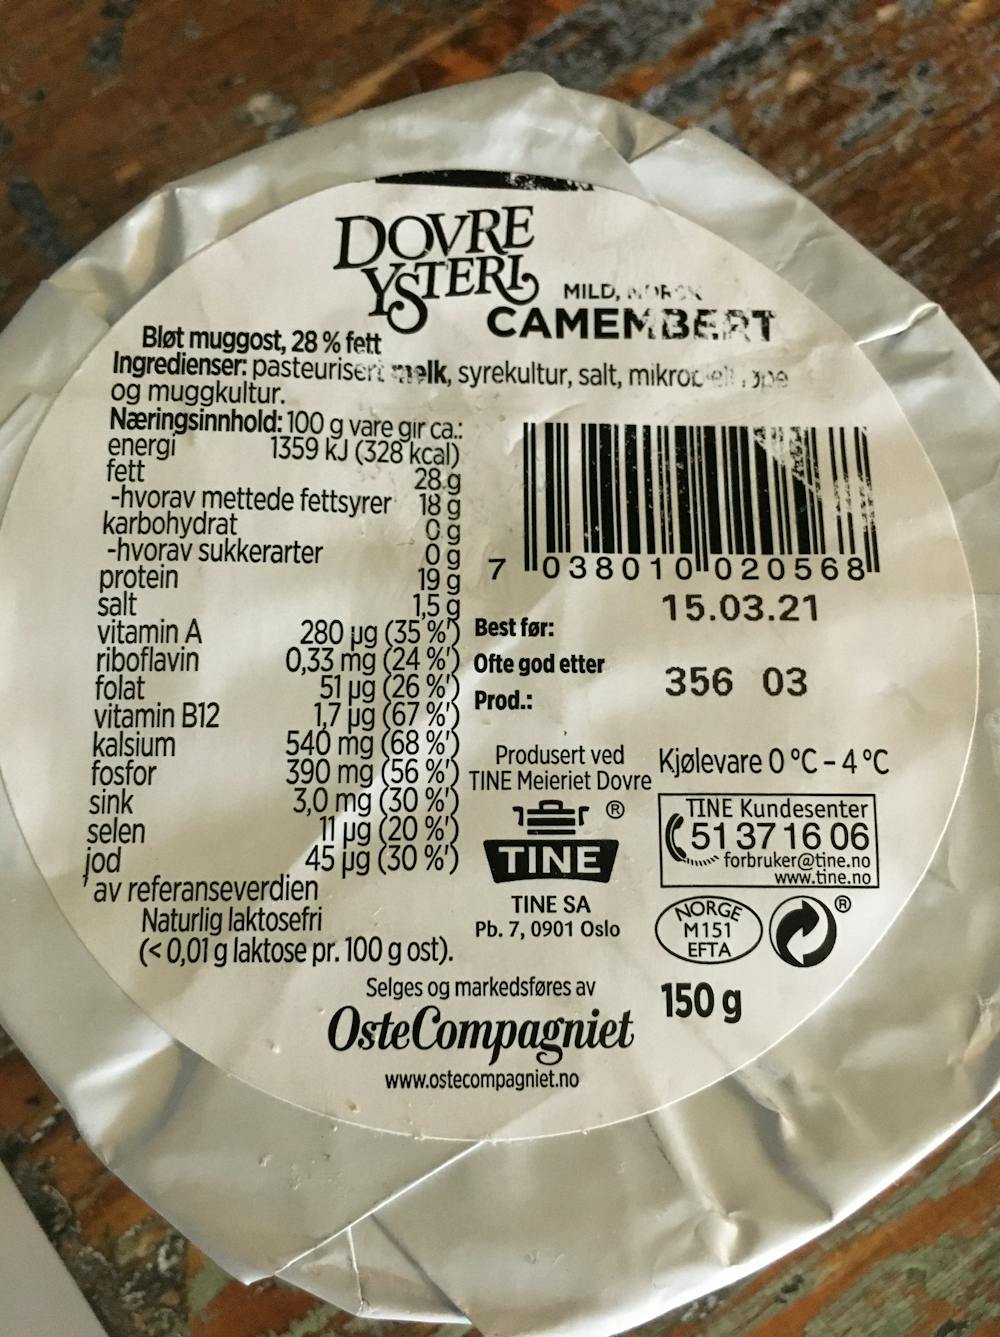 Ingredienslisten til Camembert , Dovre ysteri